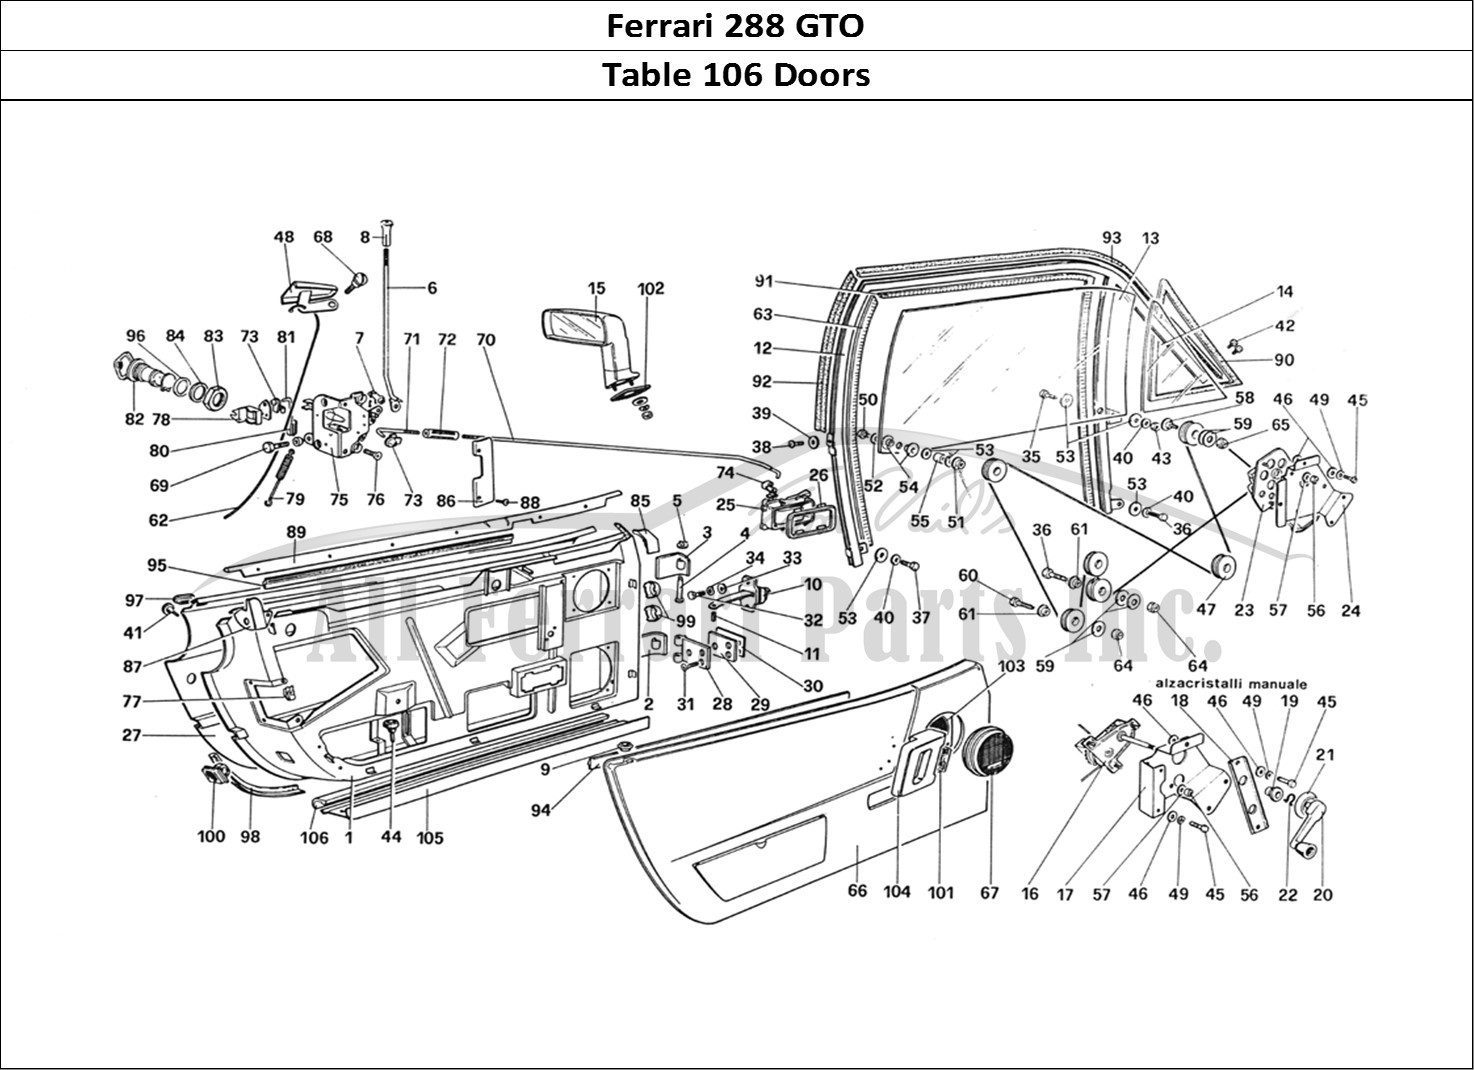 Ferrari Parts Ferrari 288 GTO Page 106 Doors